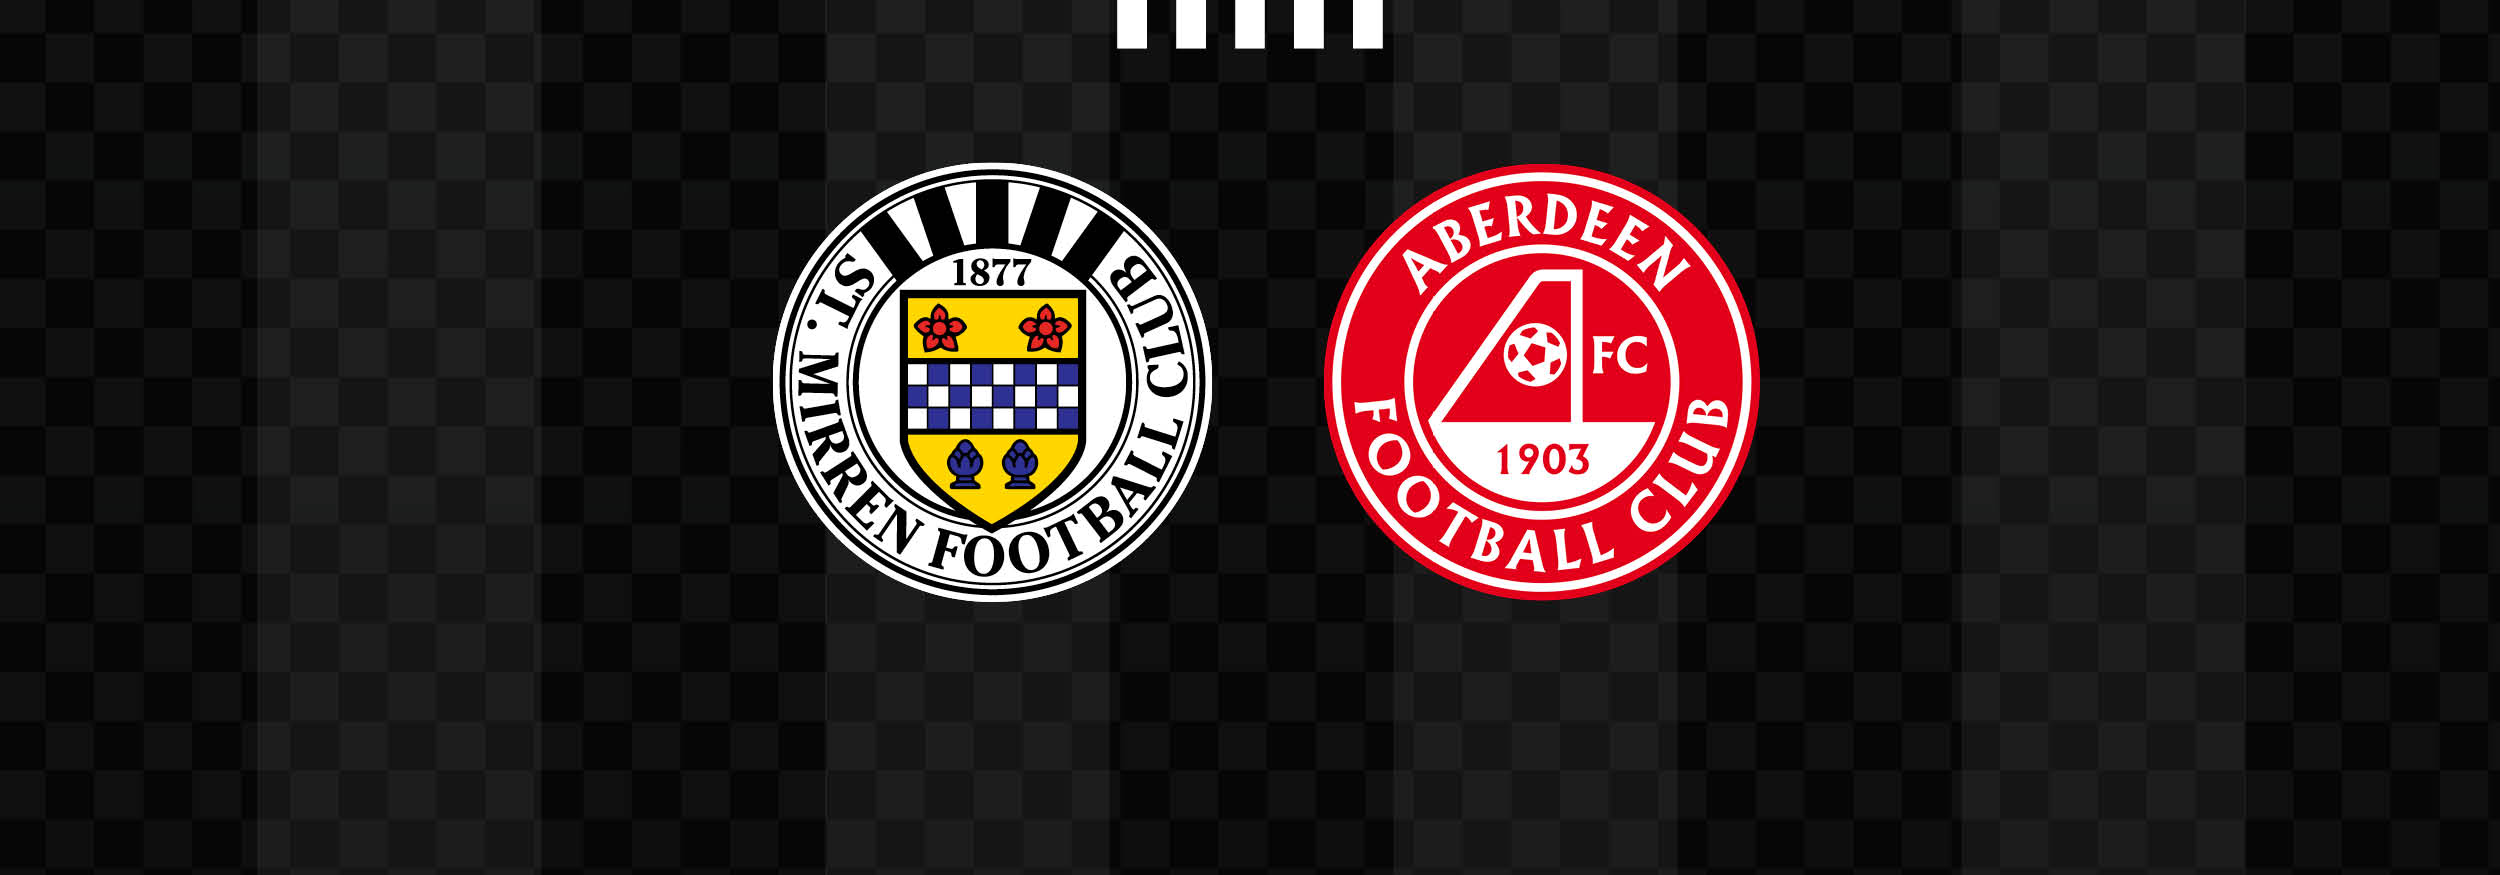 Matchday Info: St Mirren v Aberdeen (Sun 27th Aug)